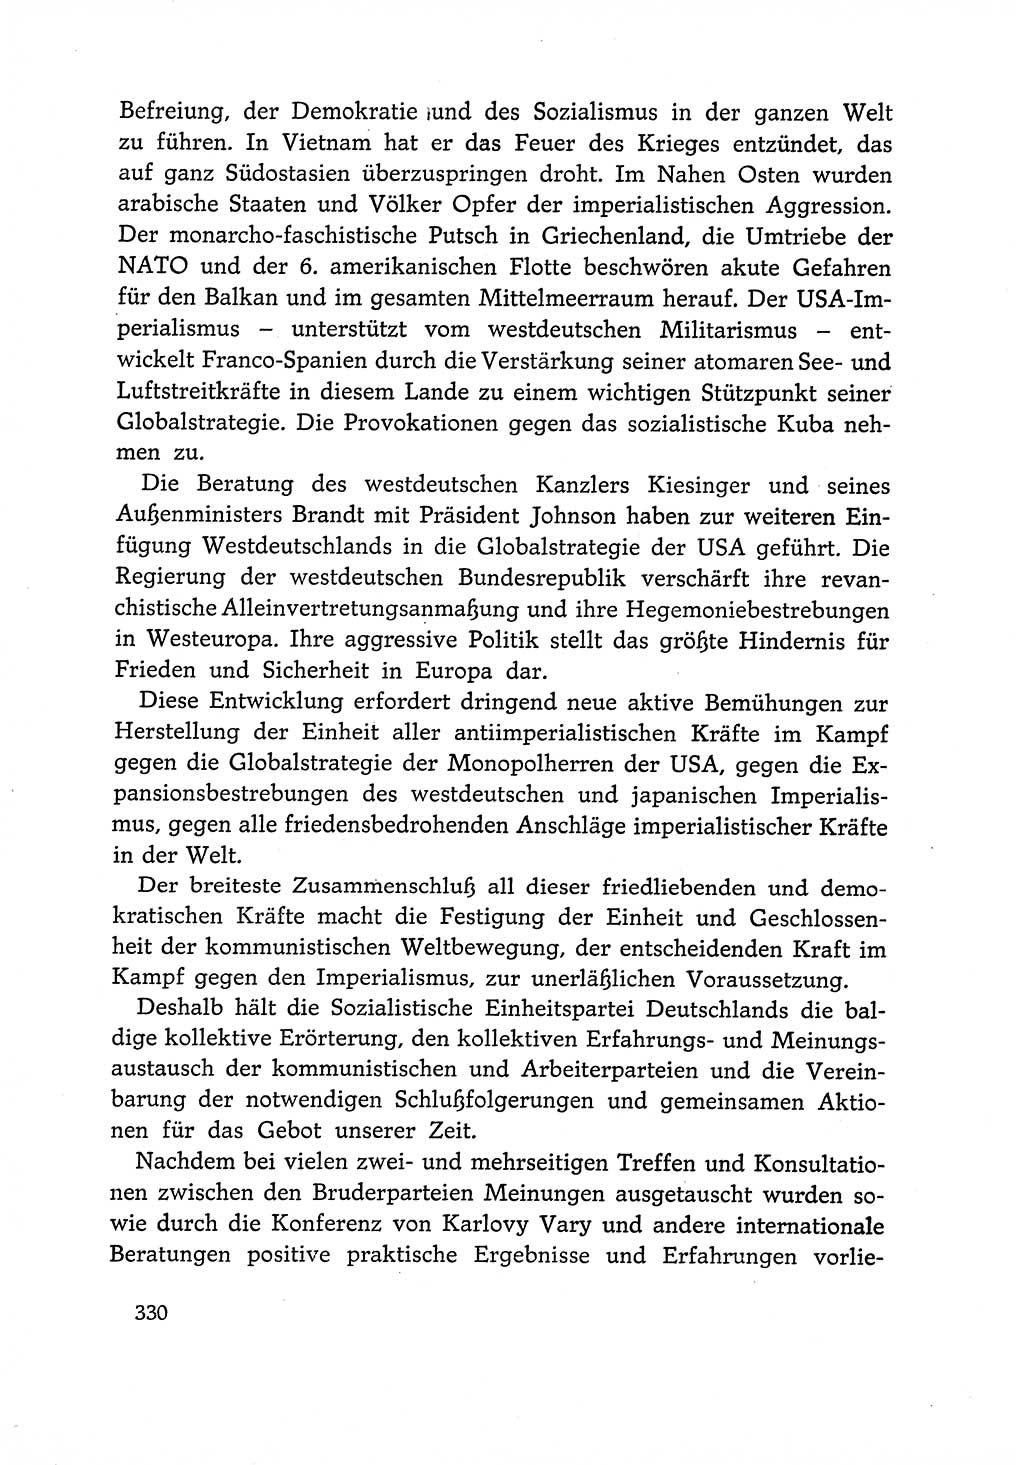 Dokumente der Sozialistischen Einheitspartei Deutschlands (SED) [Deutsche Demokratische Republik (DDR)] 1966-1967, Seite 330 (Dok. SED DDR 1966-1967, S. 330)